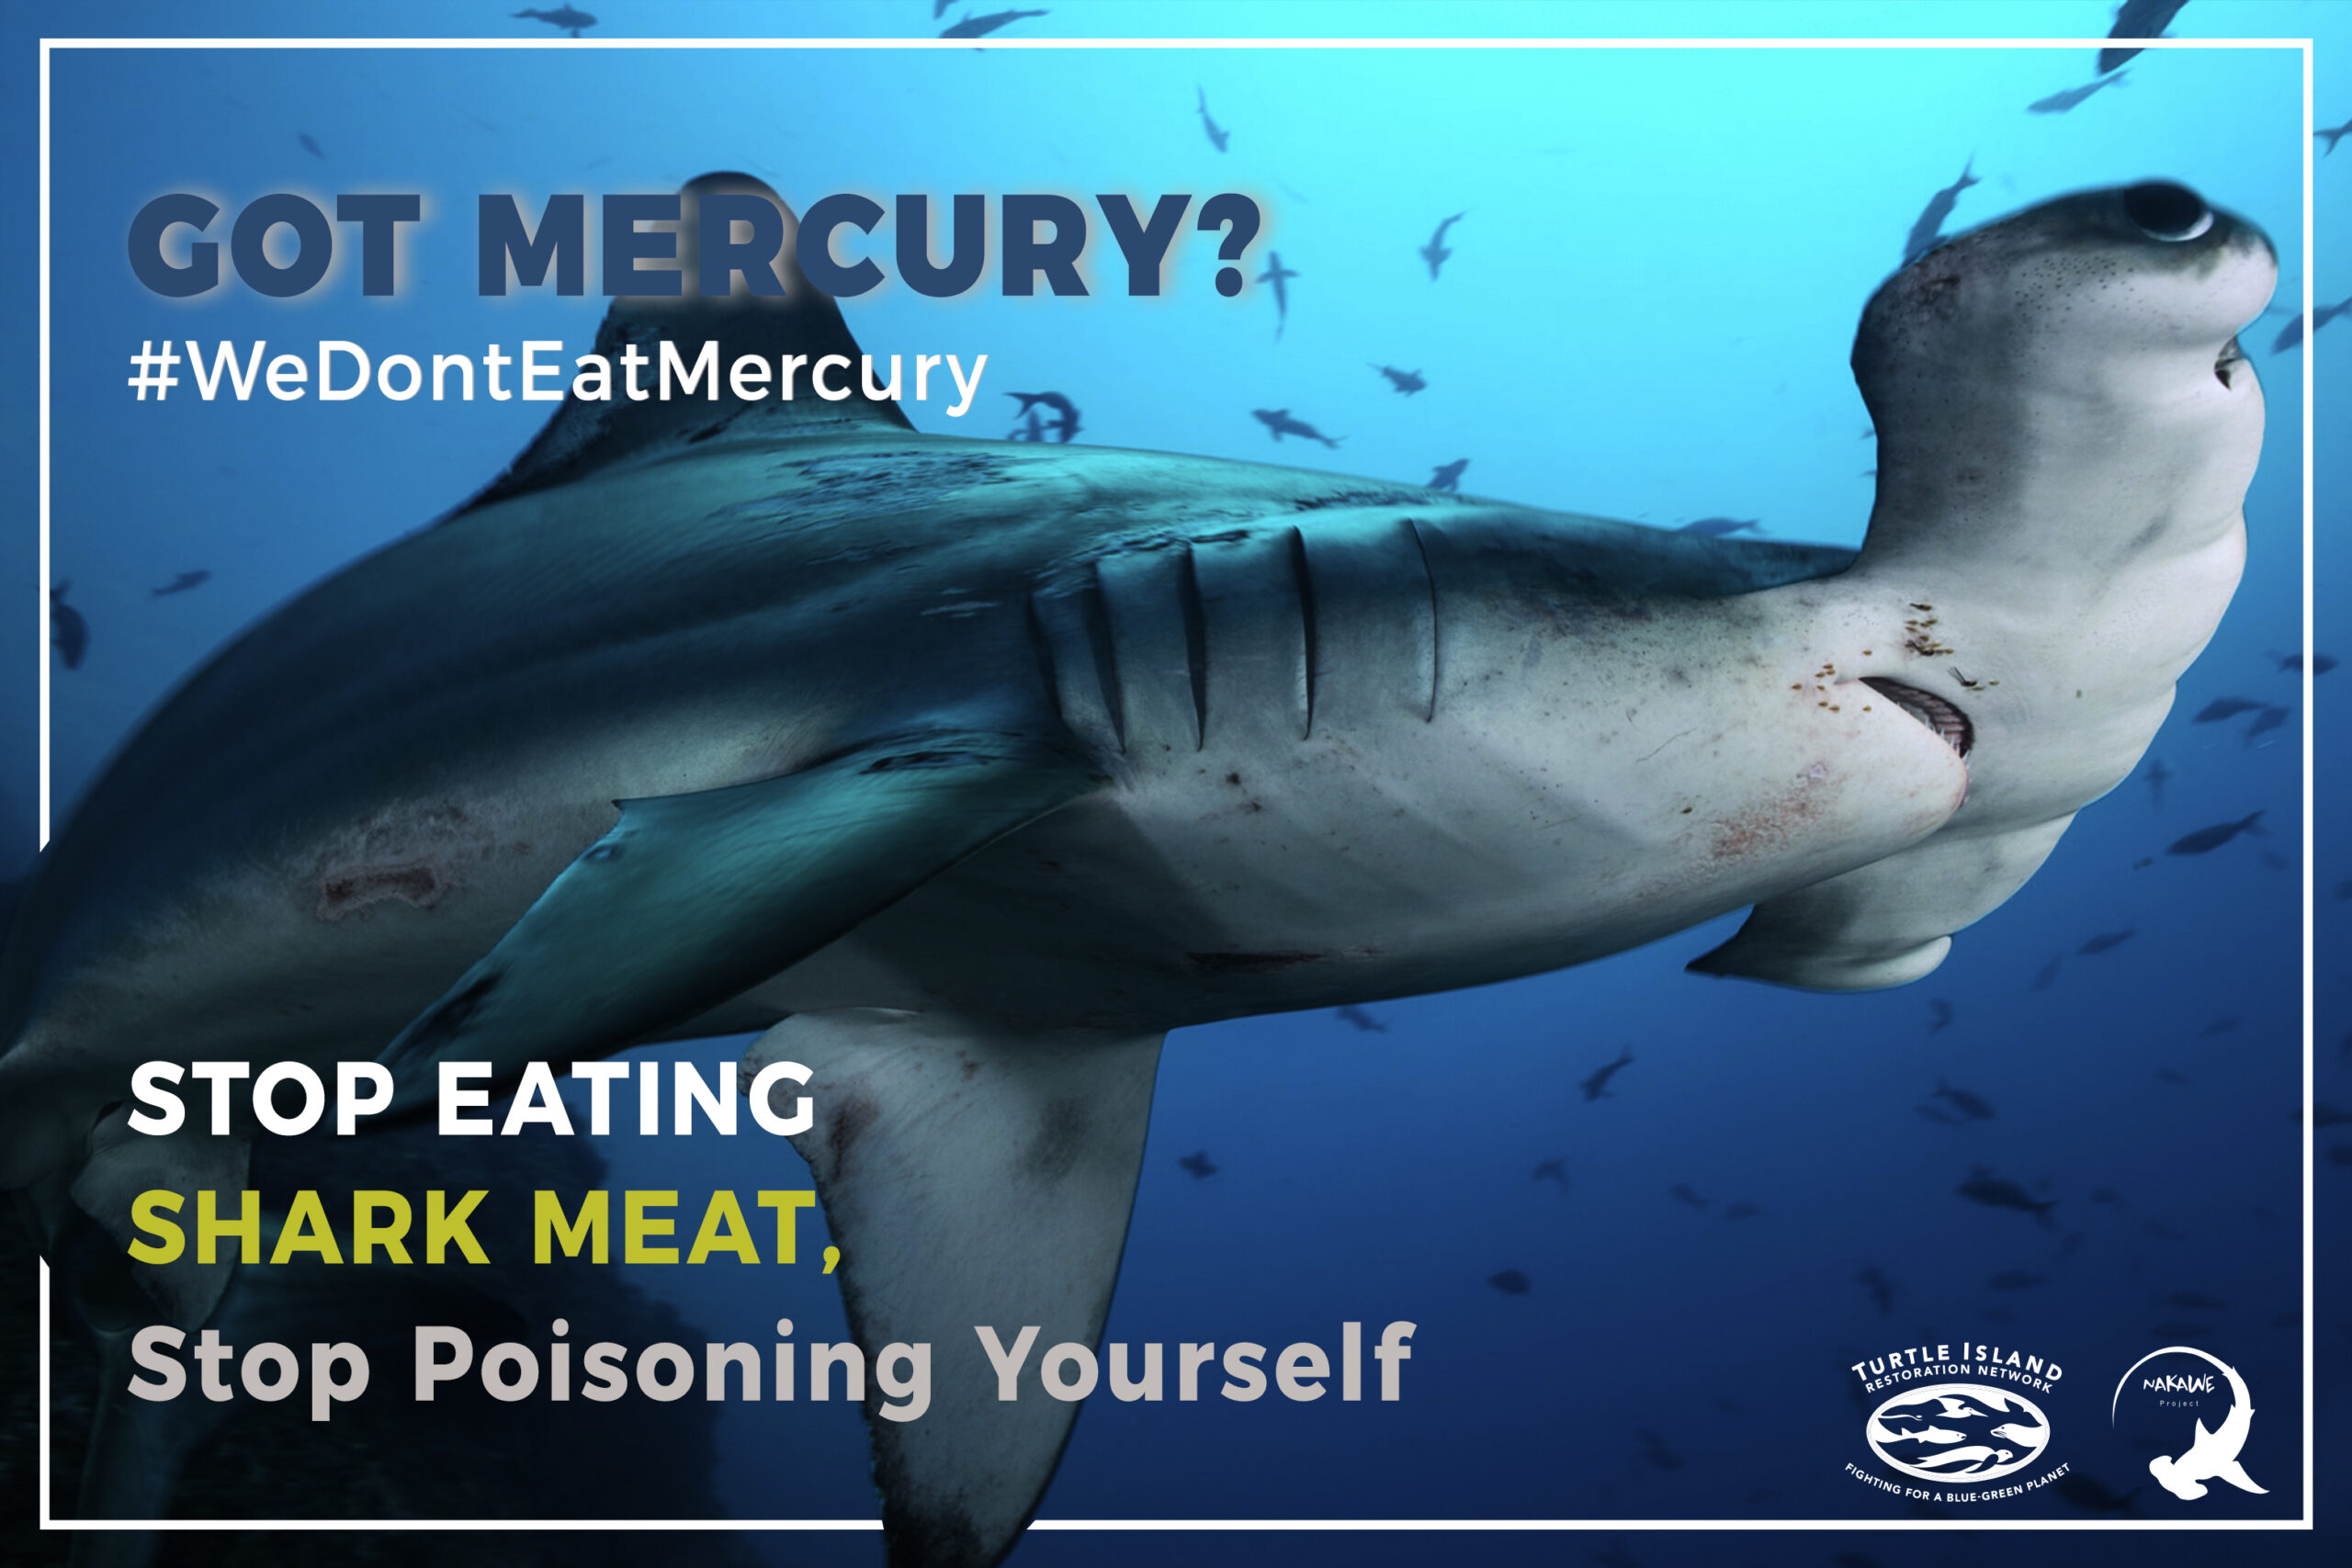 Campaña lanzada en México para advertir sobre los riesgos para la salud de comer carne de tiburón